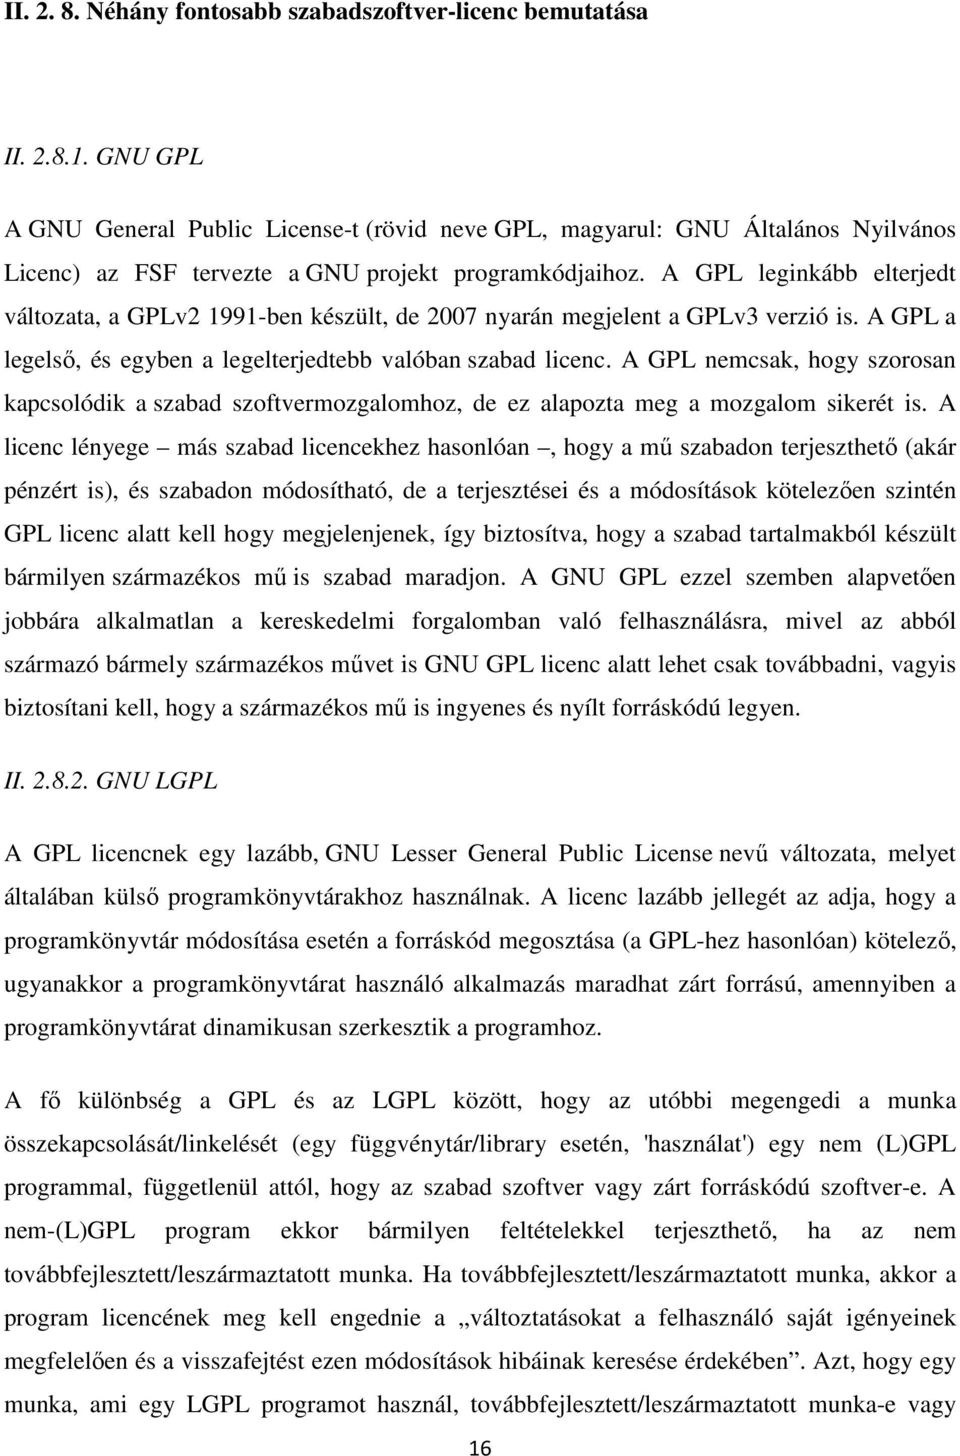 A GPL leginkább elterjedt változata, a GPLv2 1991-ben készült, de 2007 nyarán megjelent a GPLv3 verzió is. A GPL a legelső, és egyben a legelterjedtebb valóban szabad licenc.